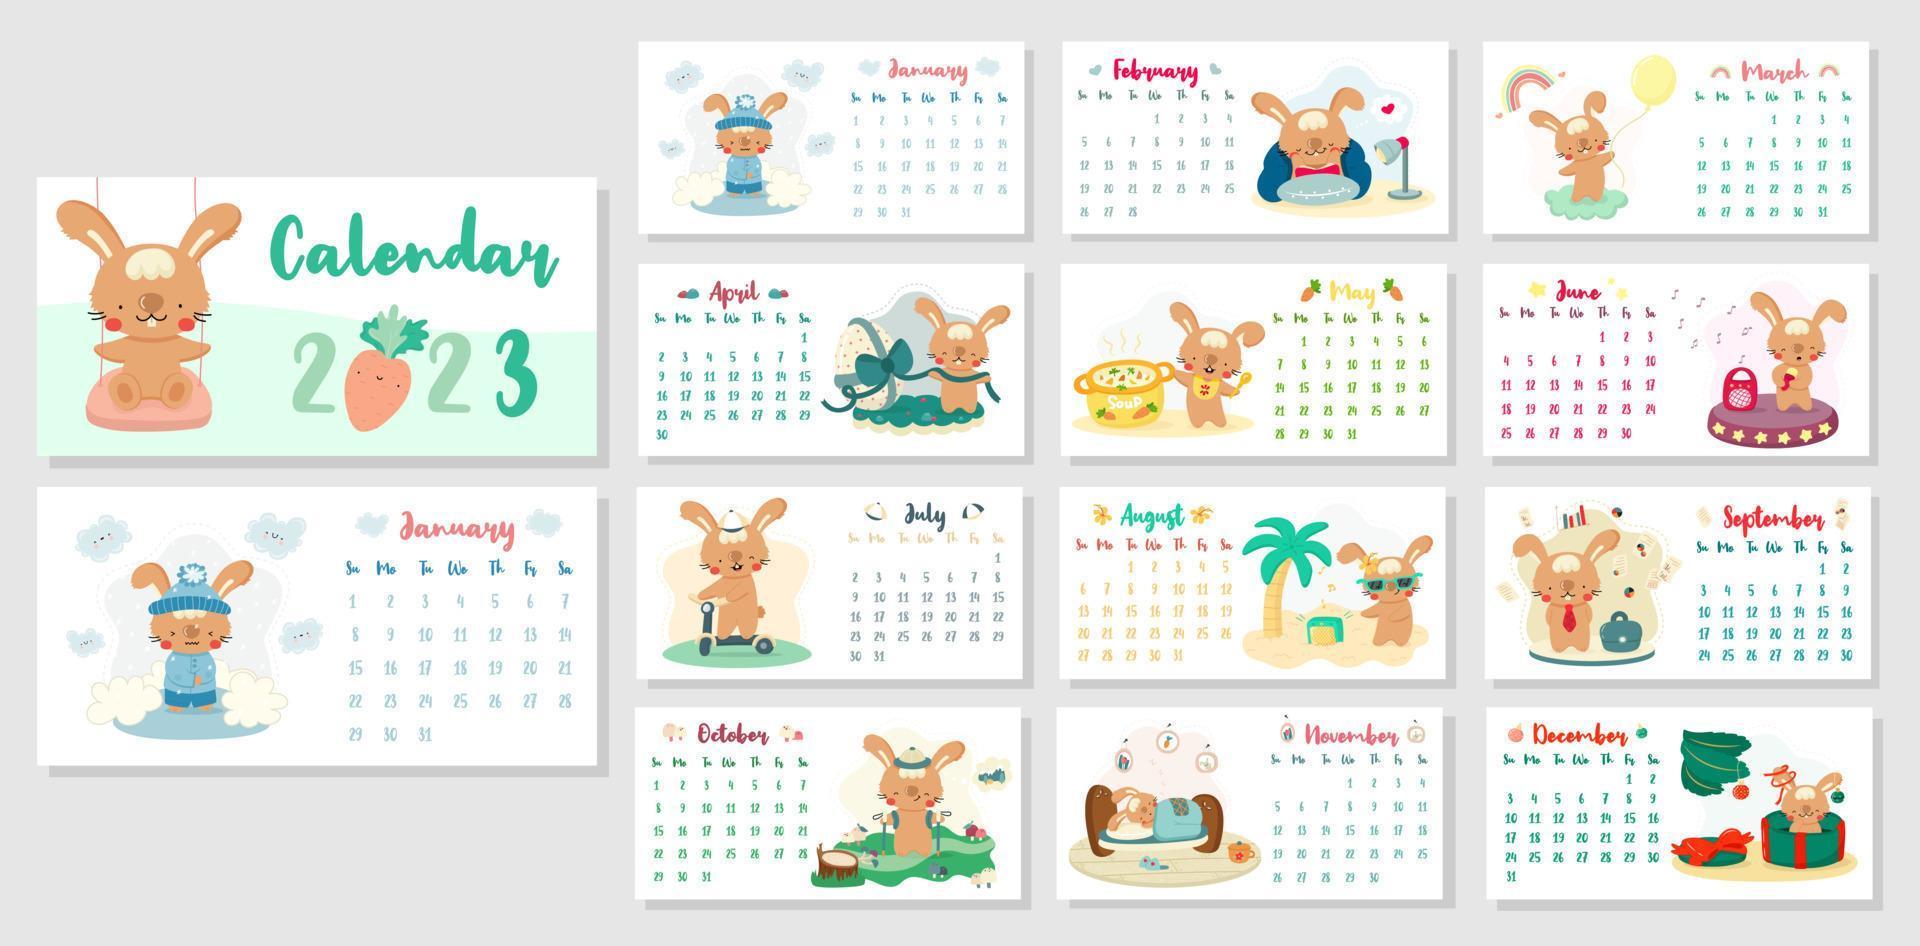 Horizontaler Tischkalender 2023 mit niedlichen Cartoon-Kaninchen. das jahr des kaninchens nach dem chinesischen kalender. Umschlag und 12 Monatsseiten mit saisonalen Illustrationen. Woche beginnt am Sonntag. vektor